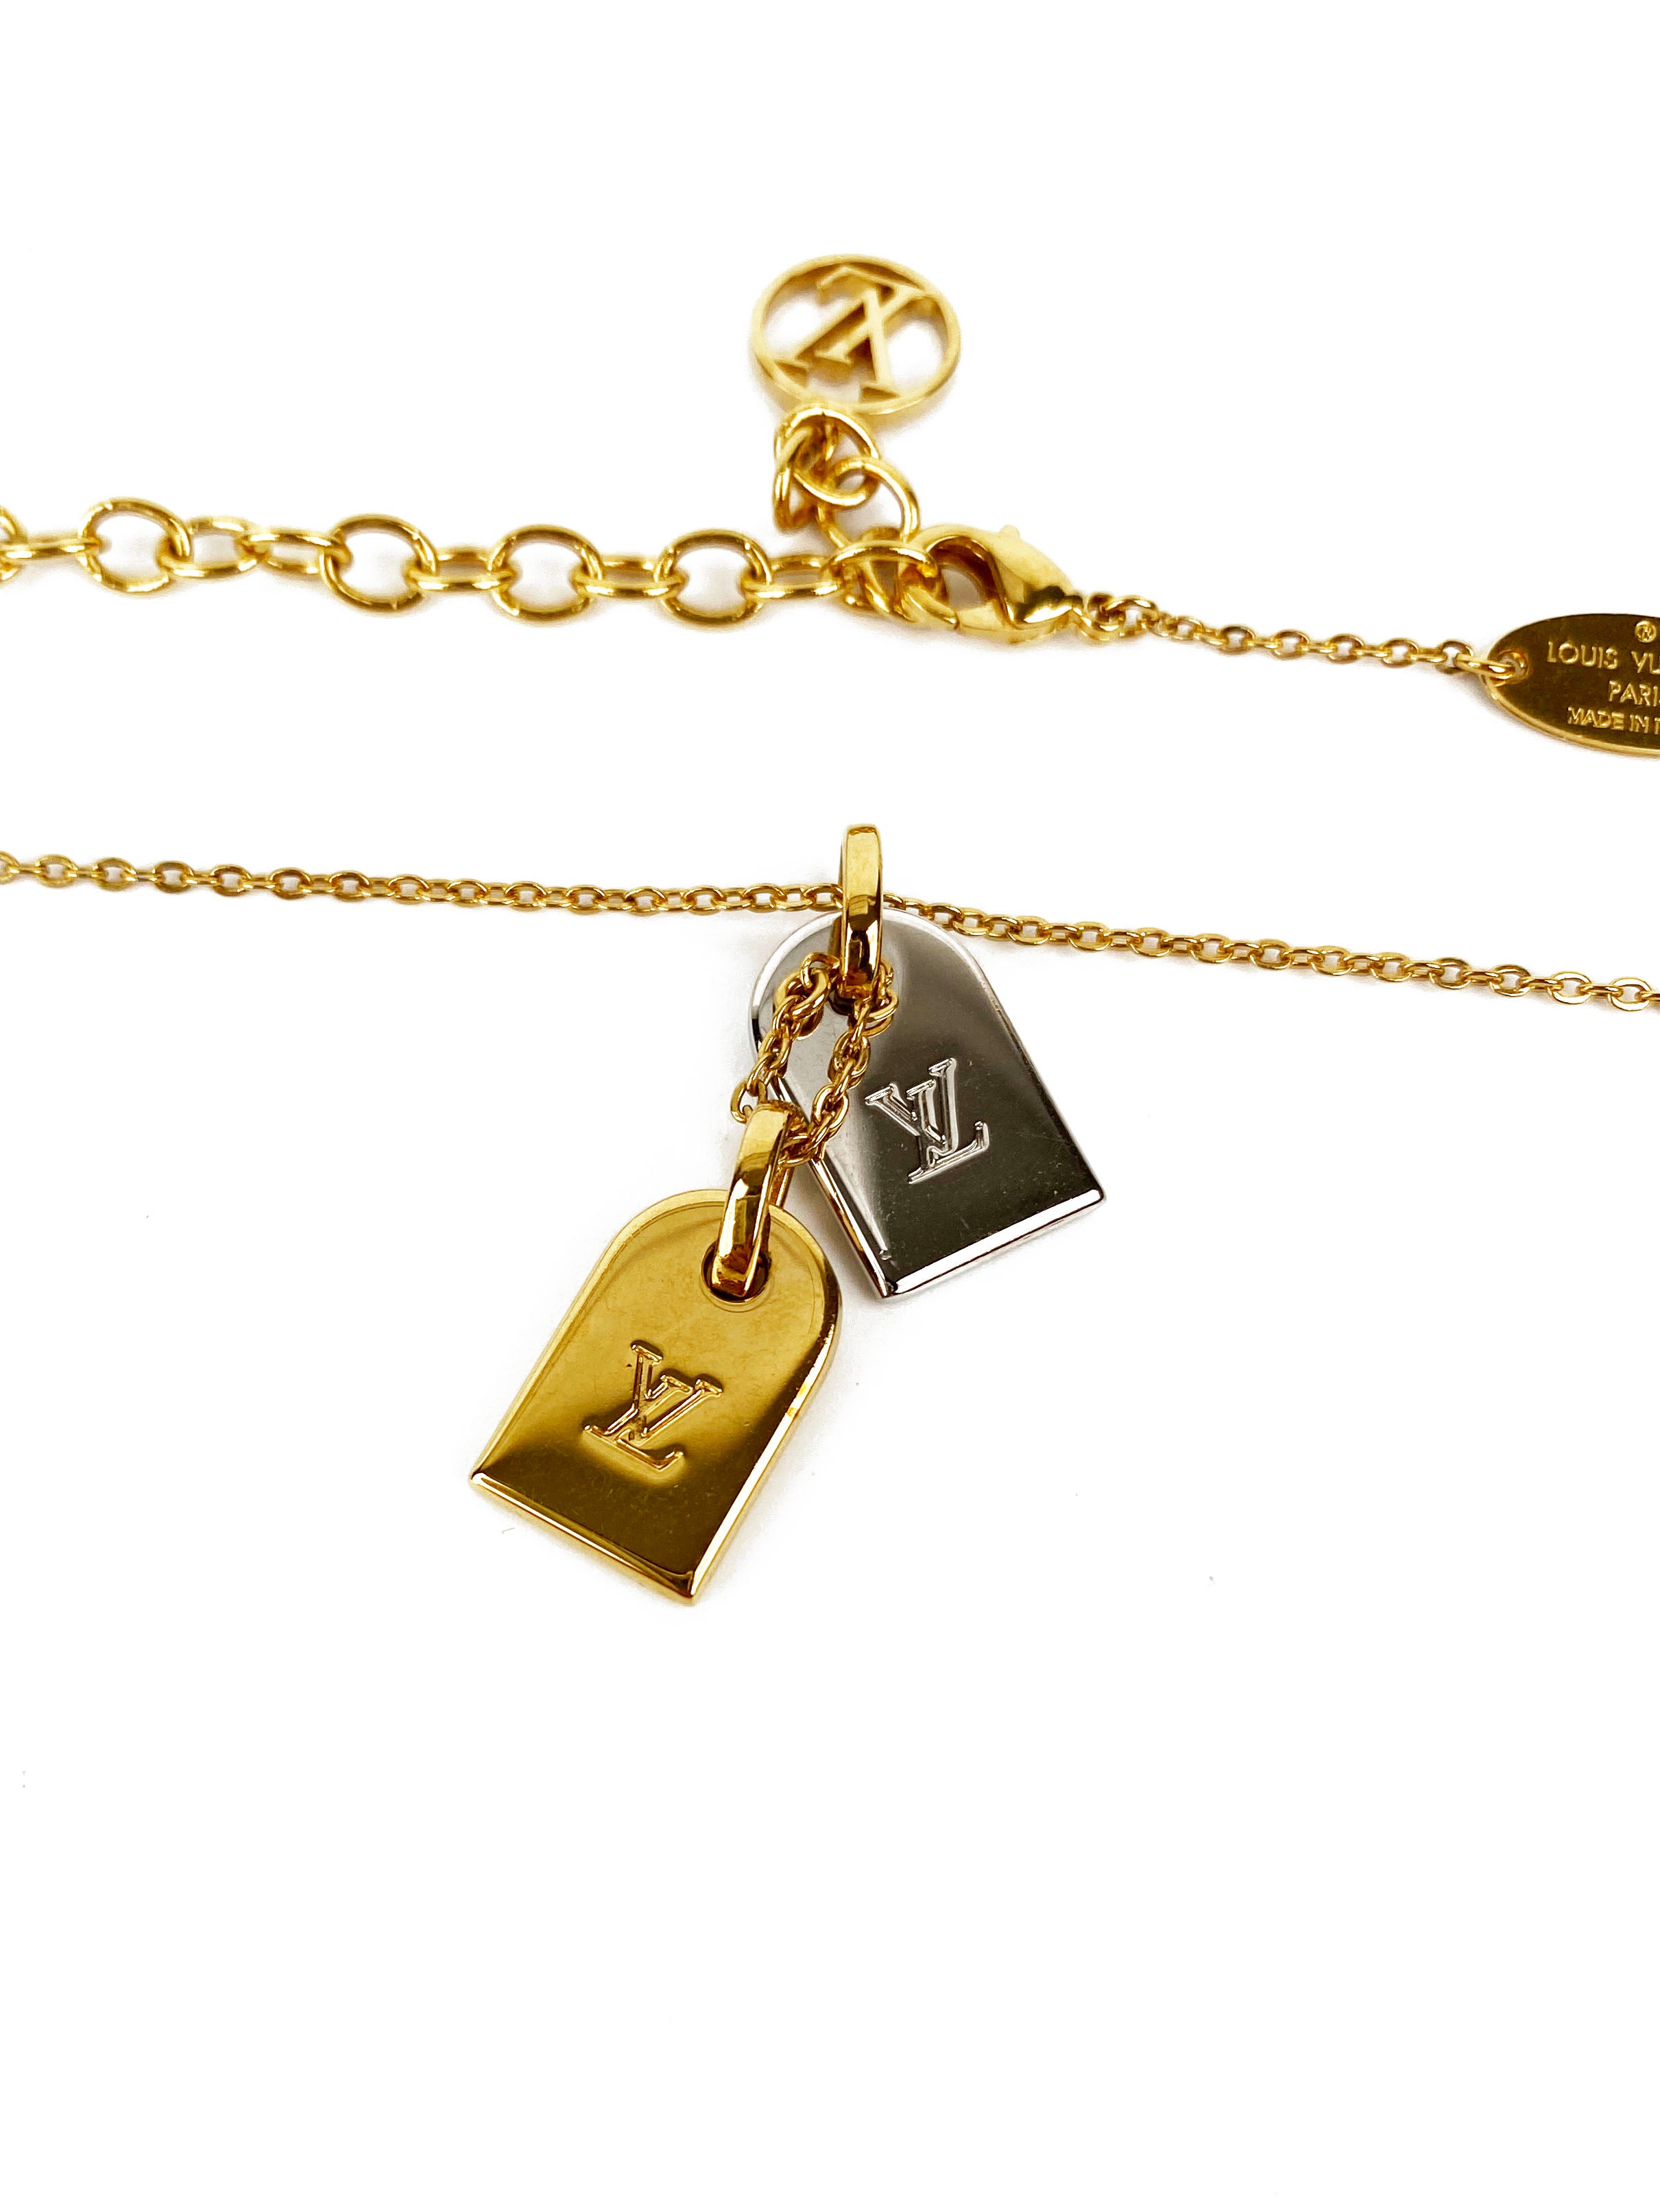 Louis Vuitton Nanogram Necklace - Gold-Tone Metal Pendant Necklace